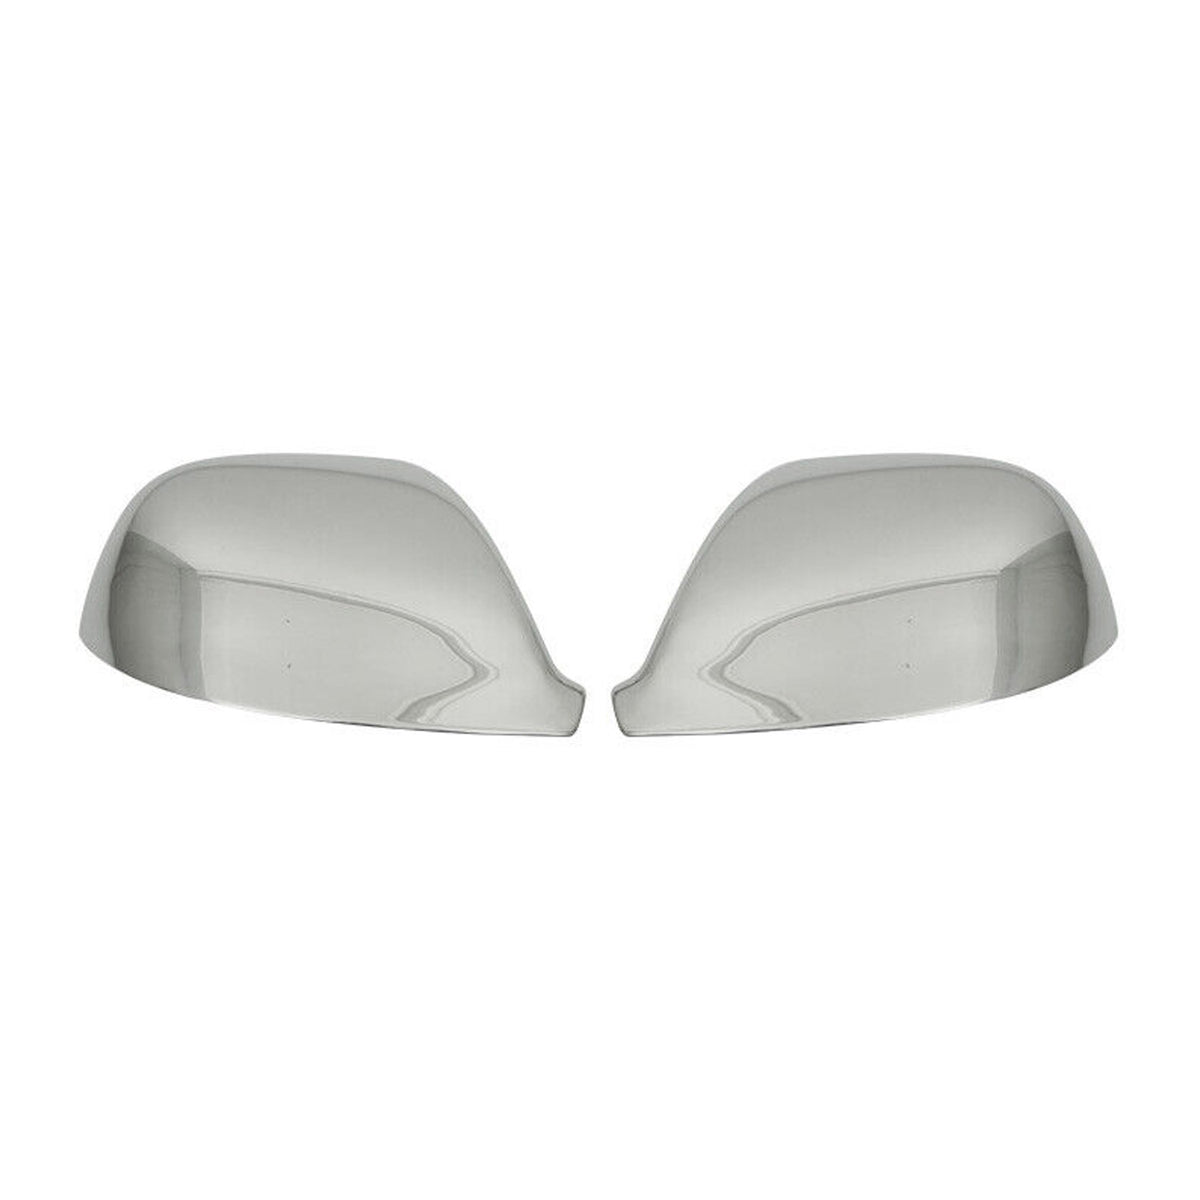 Spiegelkappen Spiegelabdeckung für VW Transporter T5 2010-2015 Edelstahl Silber